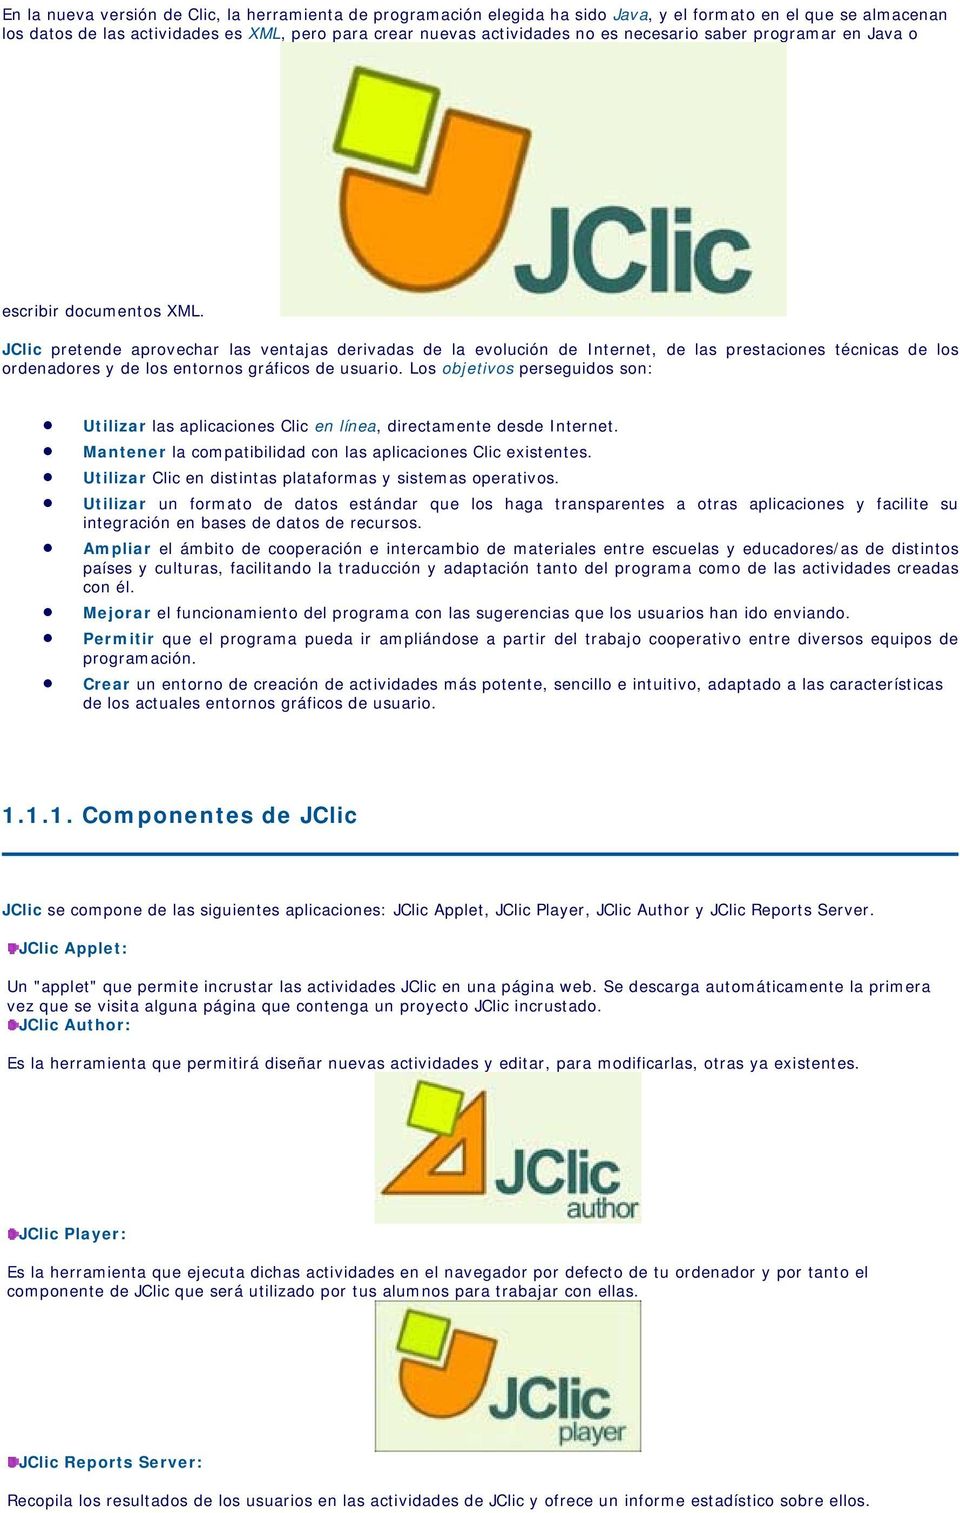 JClic pretende aprovechar las ventajas derivadas de la evolución de Internet, de las prestaciones técnicas de los ordenadores y de los entornos gráficos de usuario.